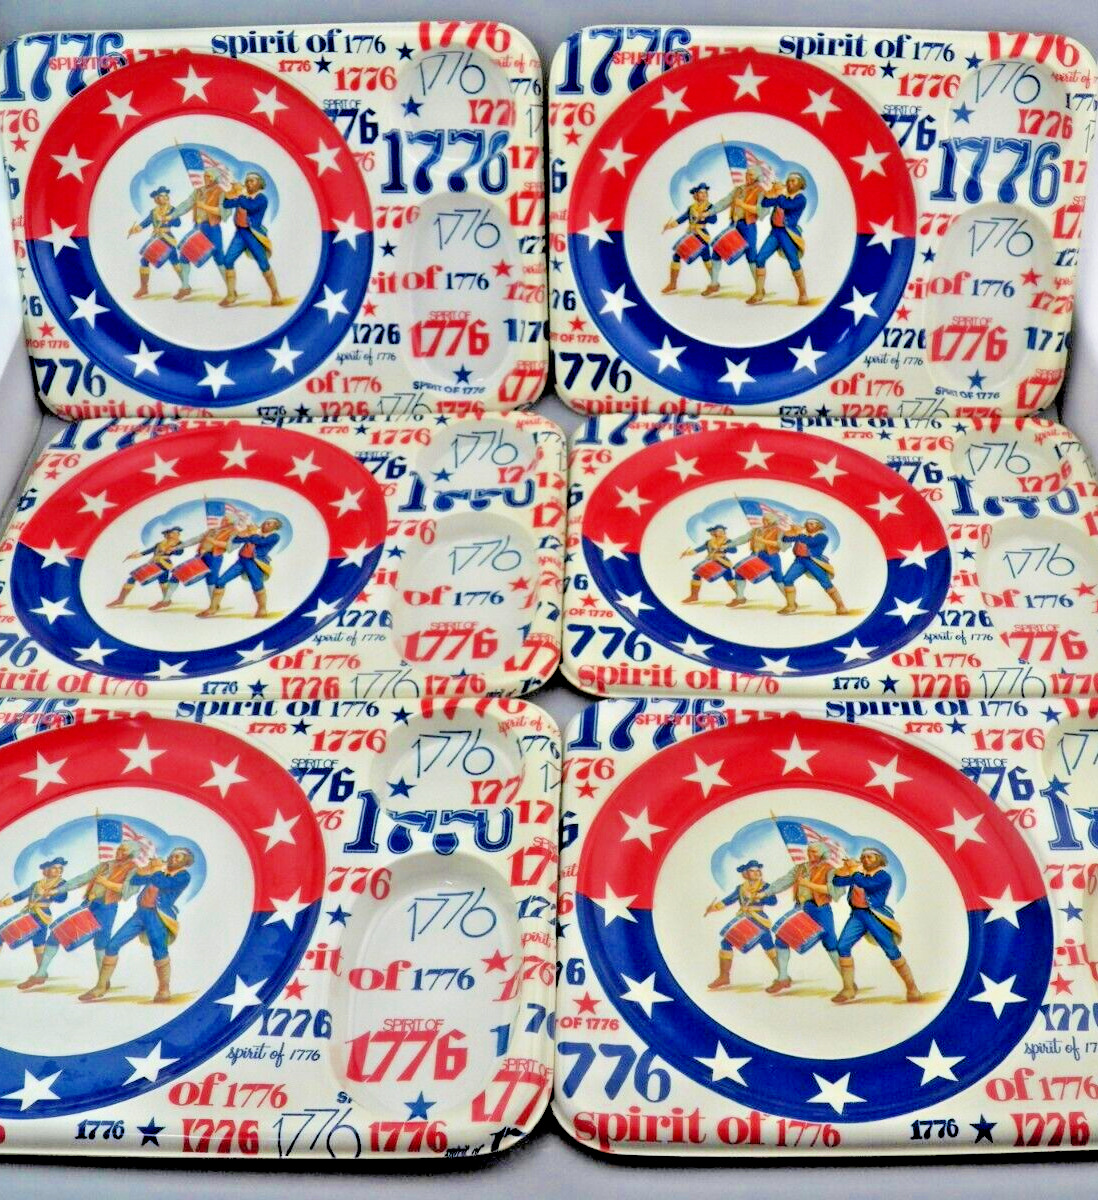 6 VTG 1776-1976 Bicentennial Spirit of 76 American Revolution Molded Food Trays